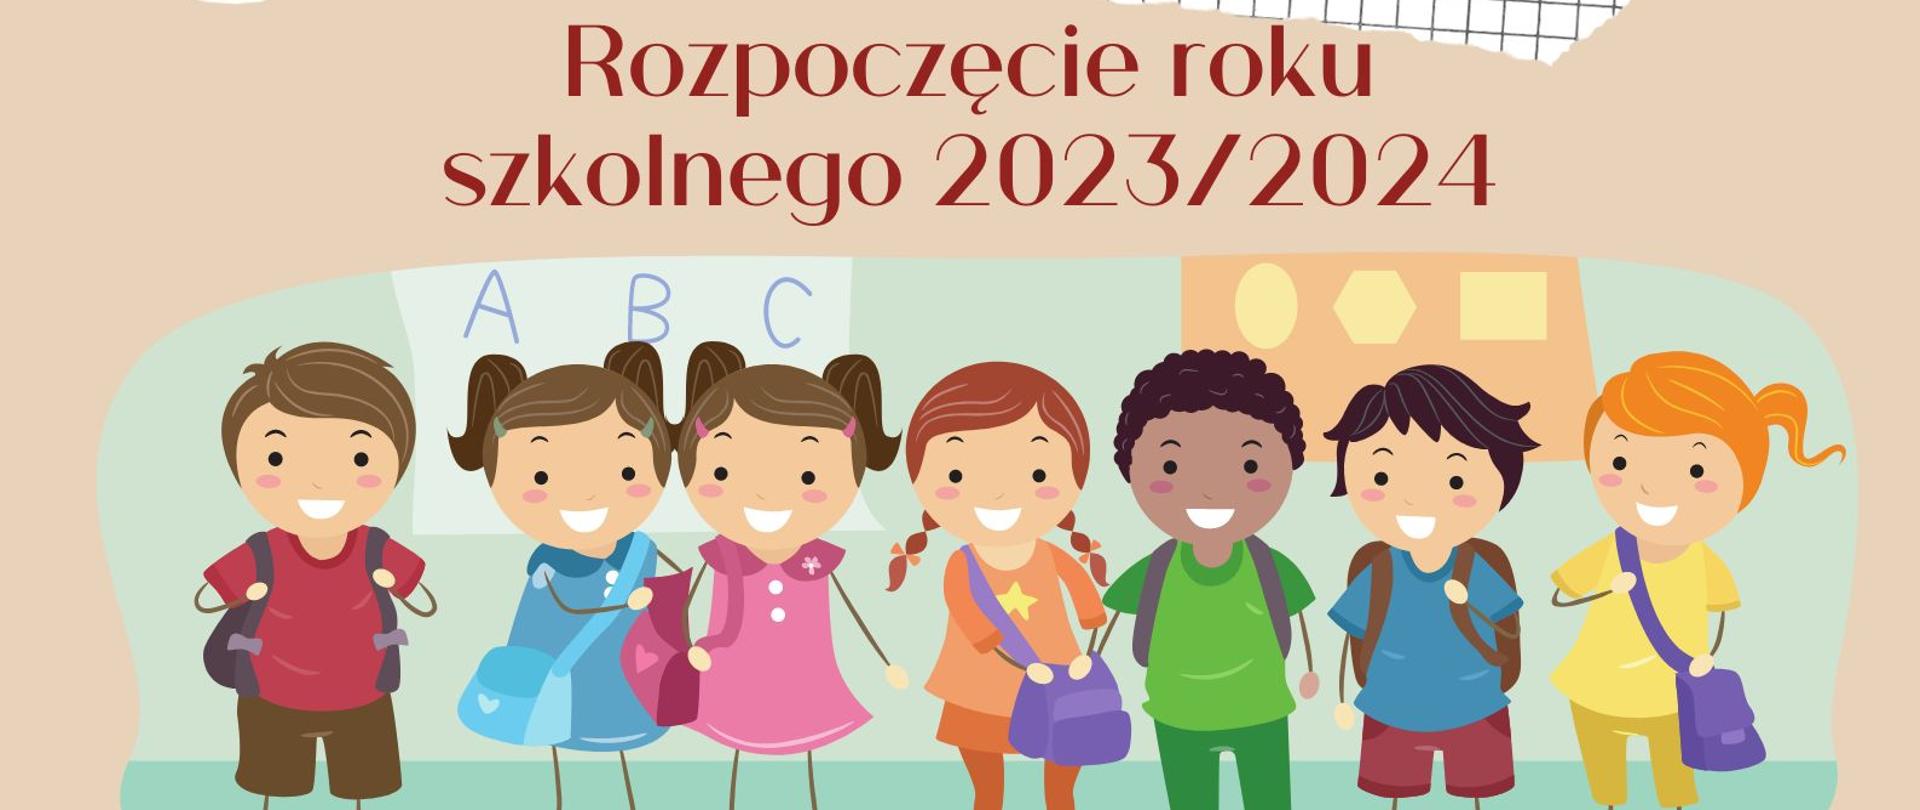 Zdjęcie przedstawia informację o rozpoczęcie roku szkolnego 2023/2024 oraz kolorową grafikę postaci dzieci